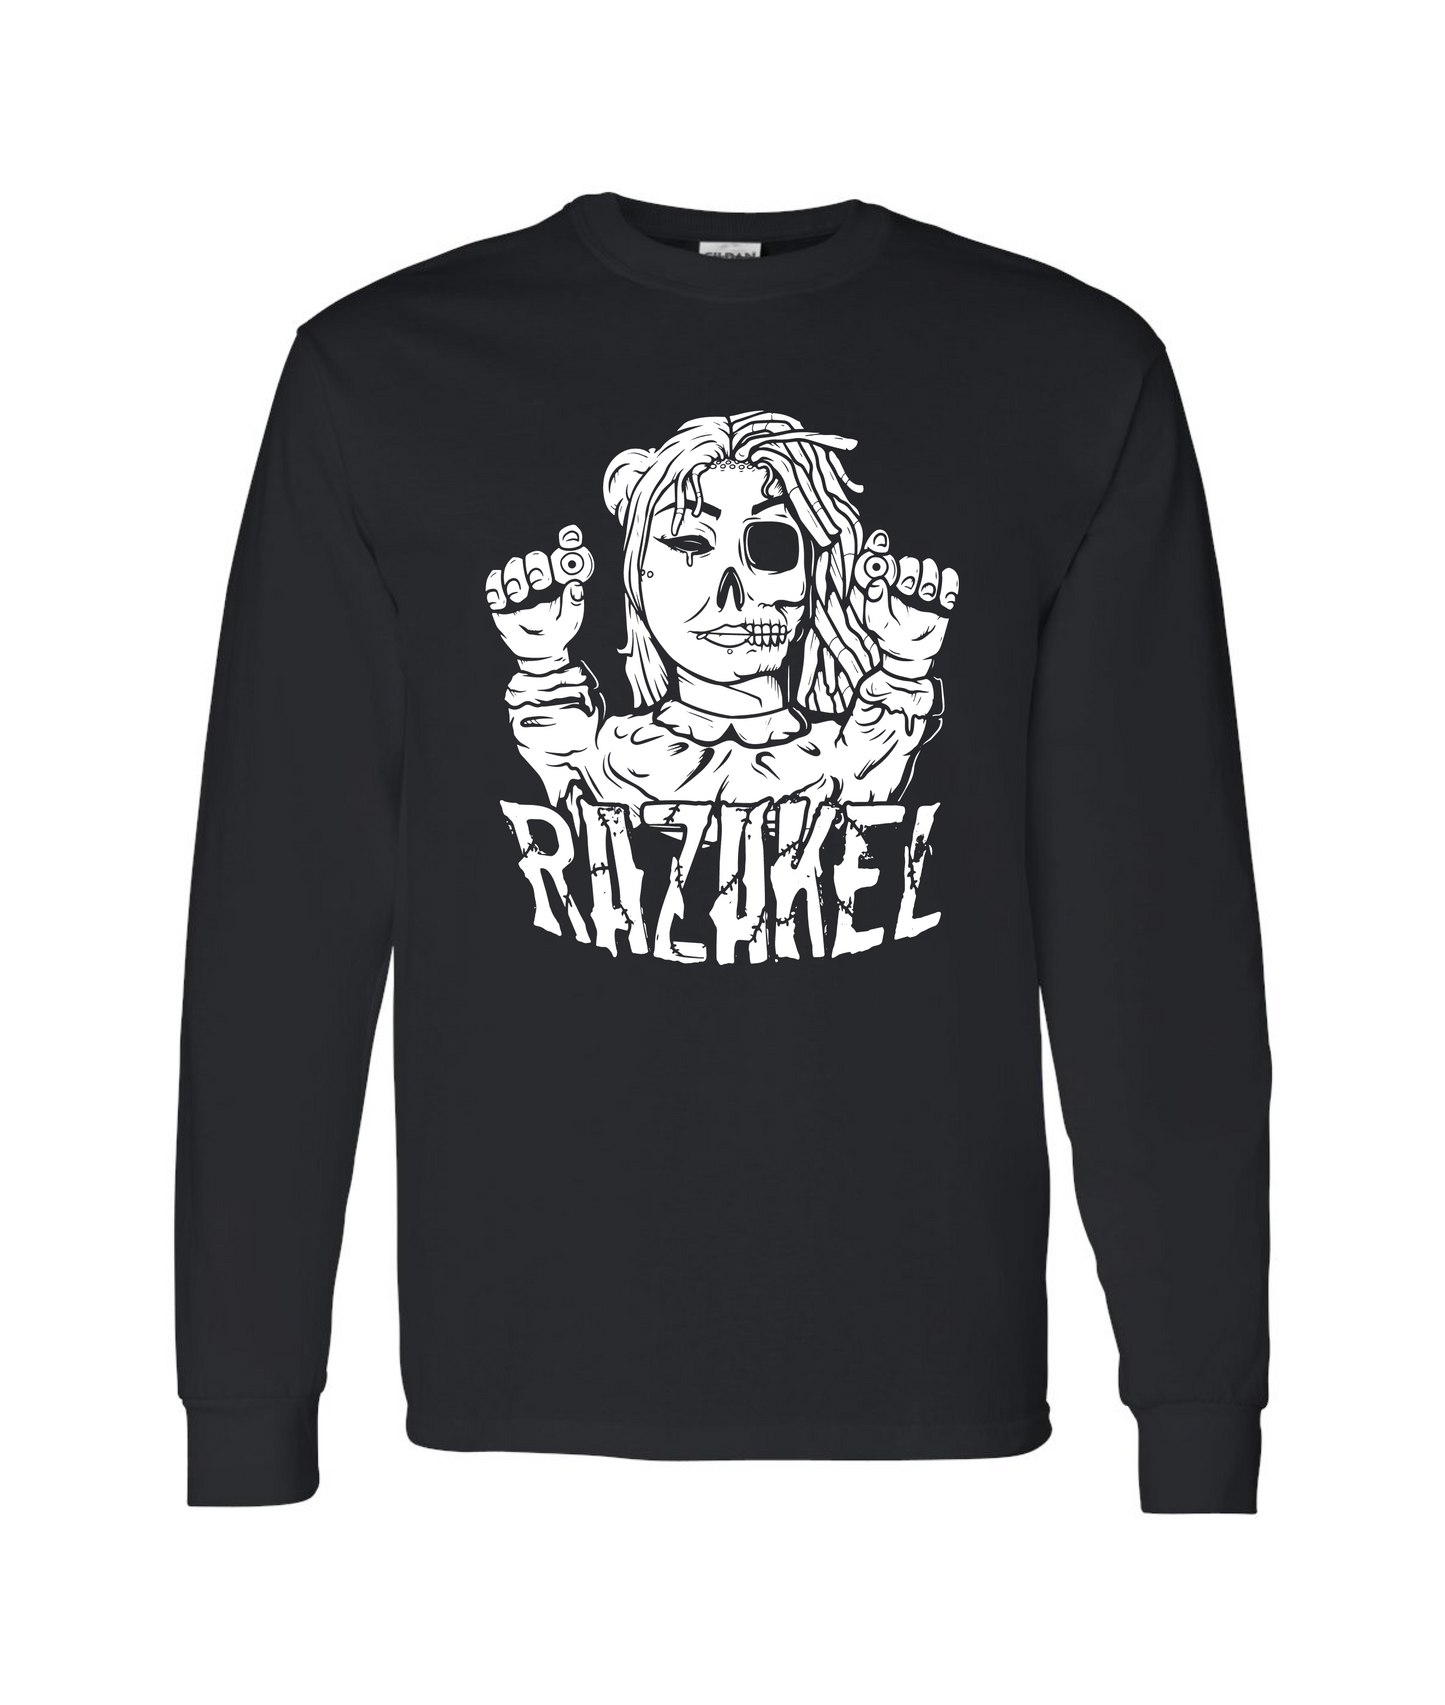 Razakel - Logo - Black Long Sleeve T